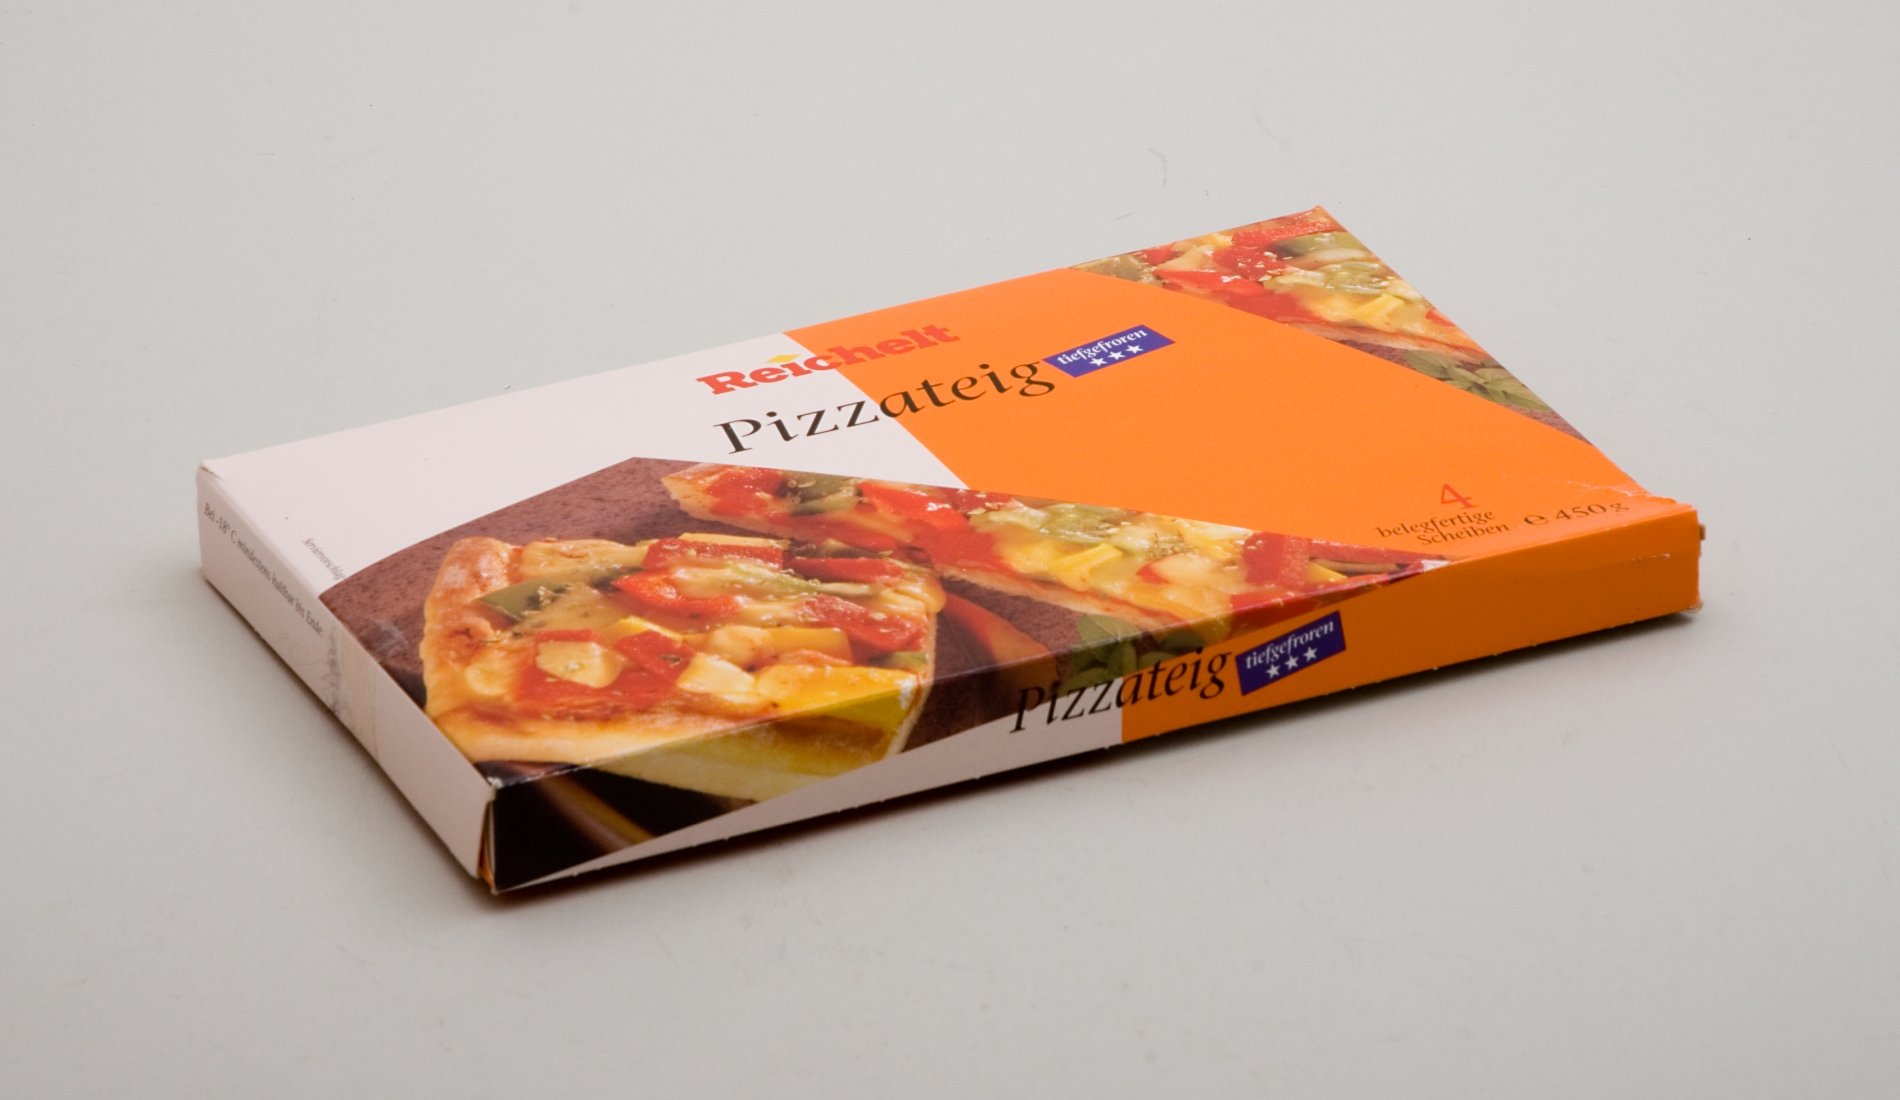 Verpackung "Pizzateig" der Firma "Reichelt" (Stiftung Domäne Dahlem - Landgut und Museum, Weiternutzung nur mit Genehmigung des Museums CC BY-NC-SA)